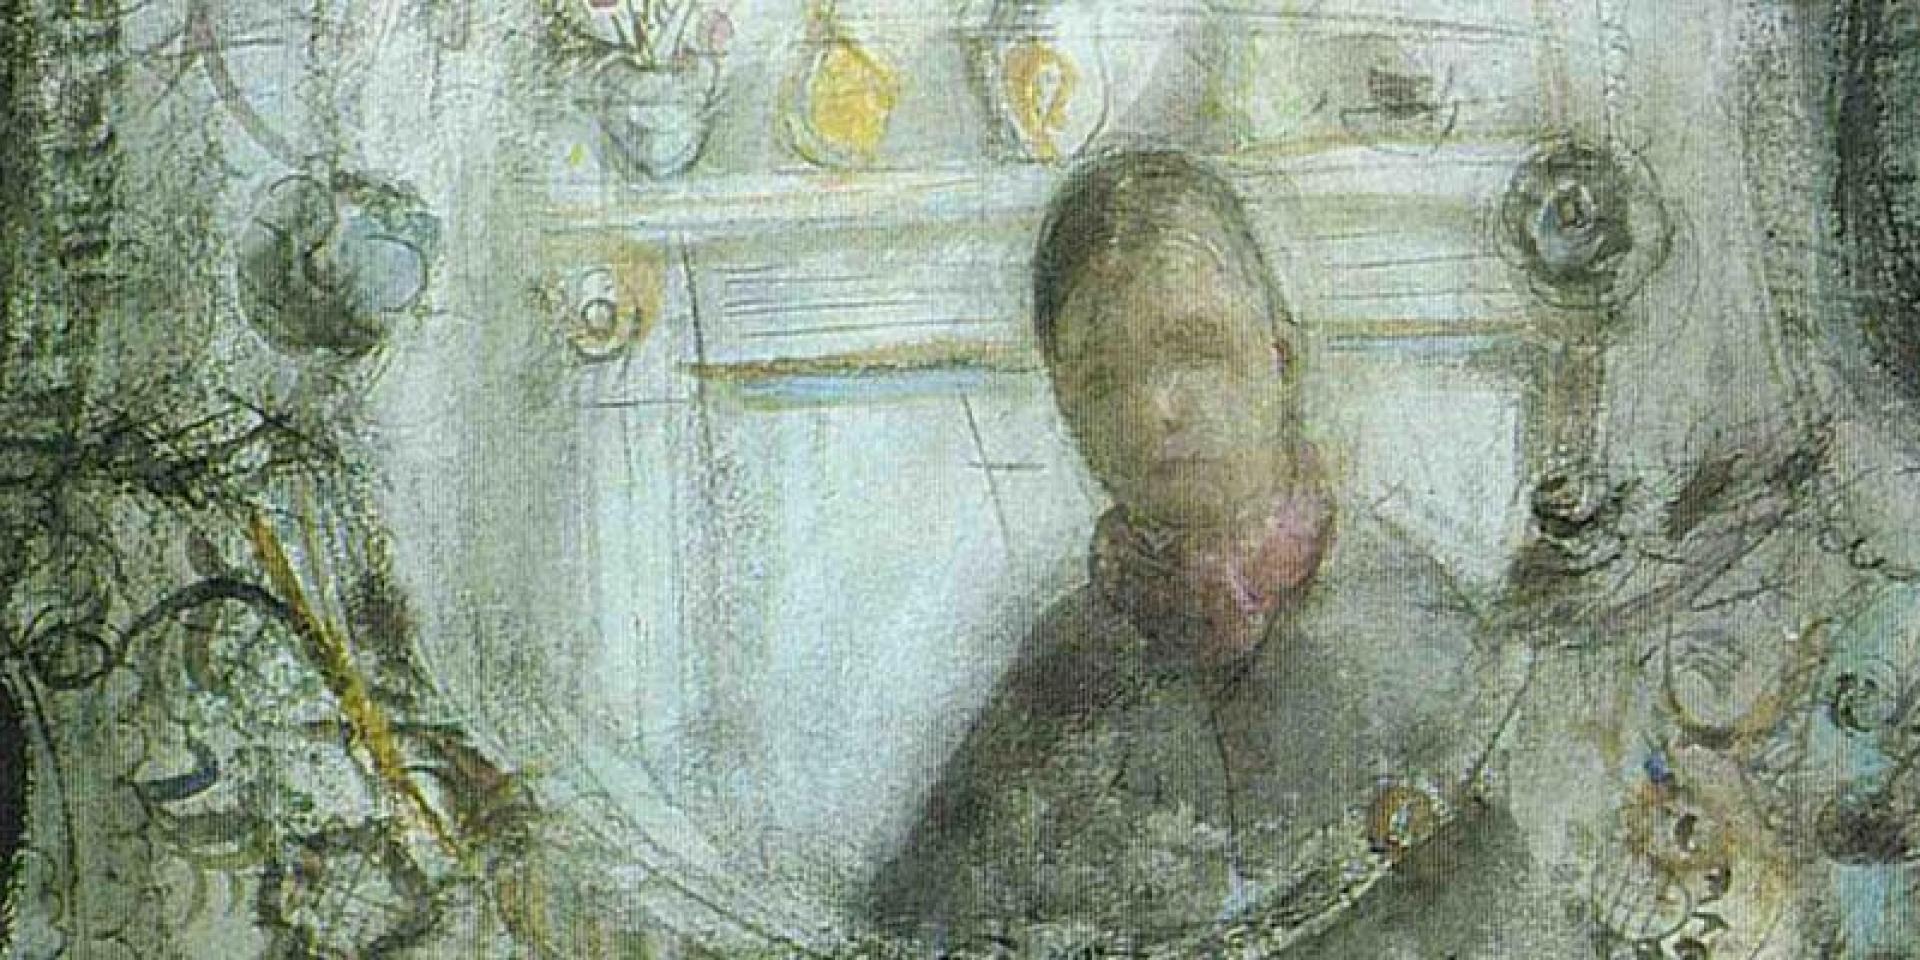 Anne Redpath, In A Mirror